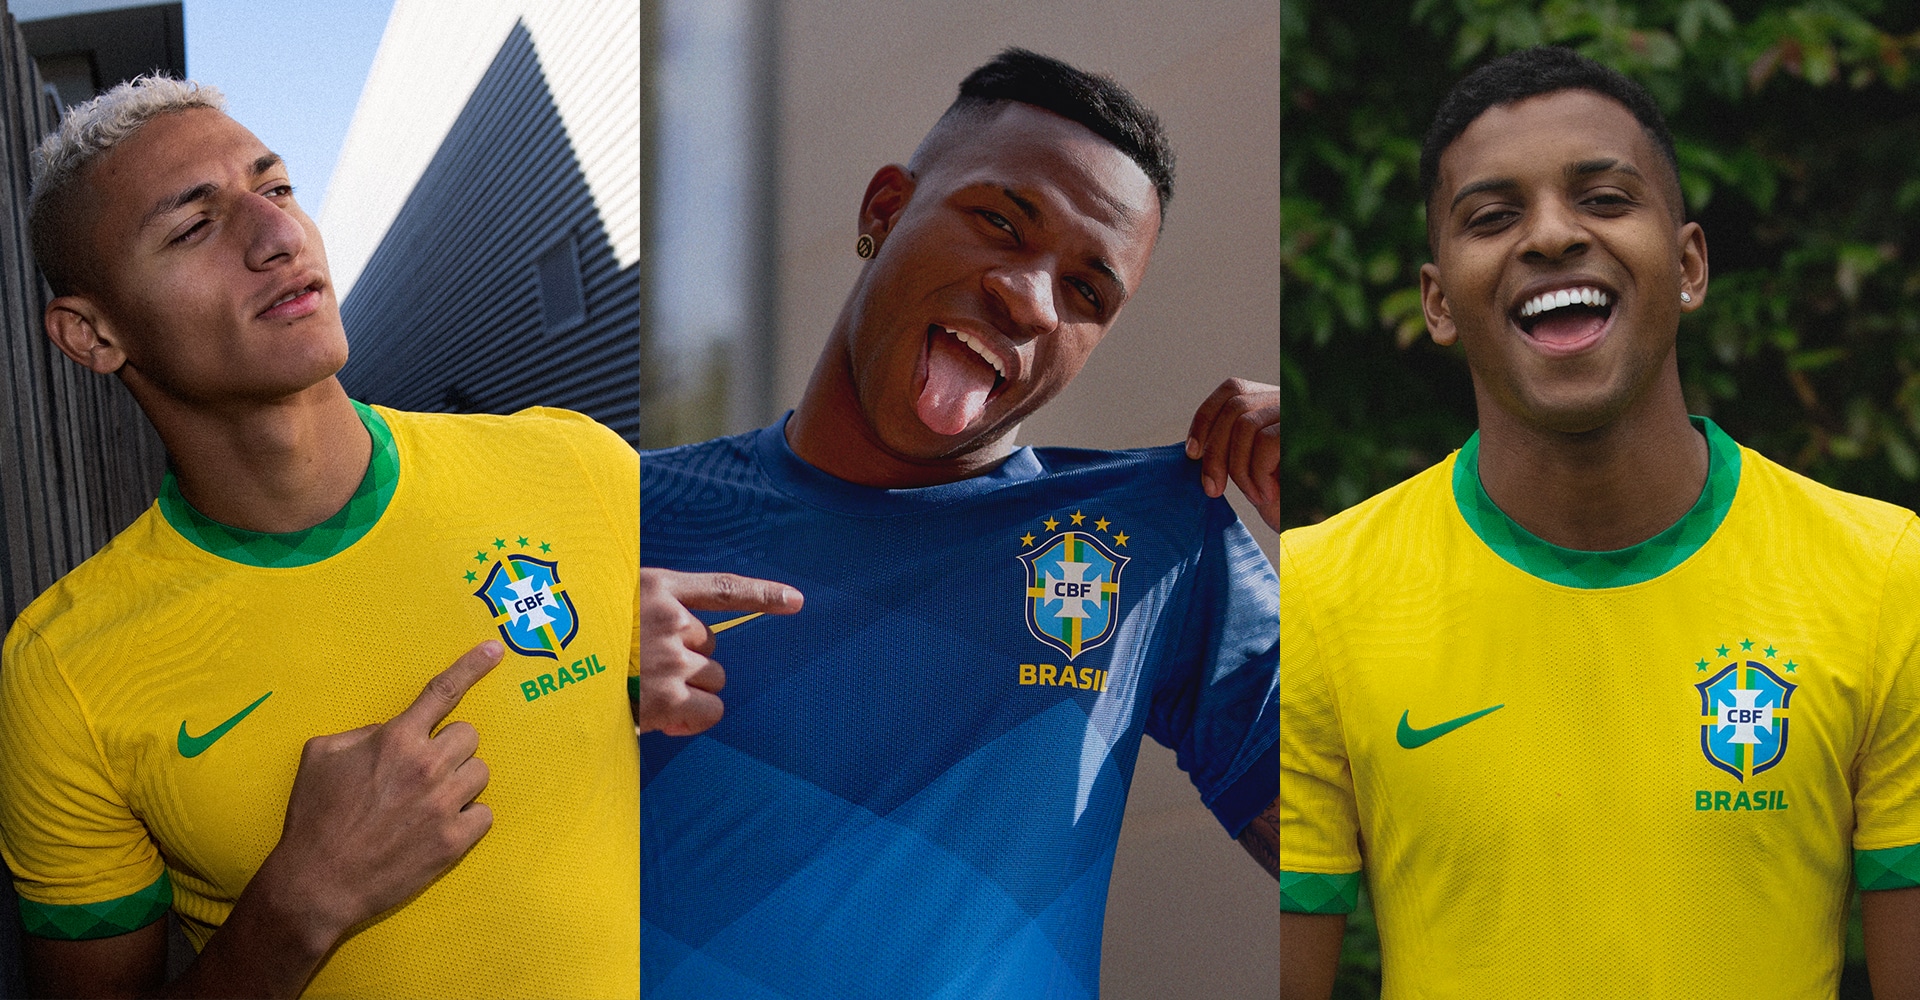 ナイキ ブラジル代表 ユニフォーム Nike ナイキ Soccer Shop Kamo